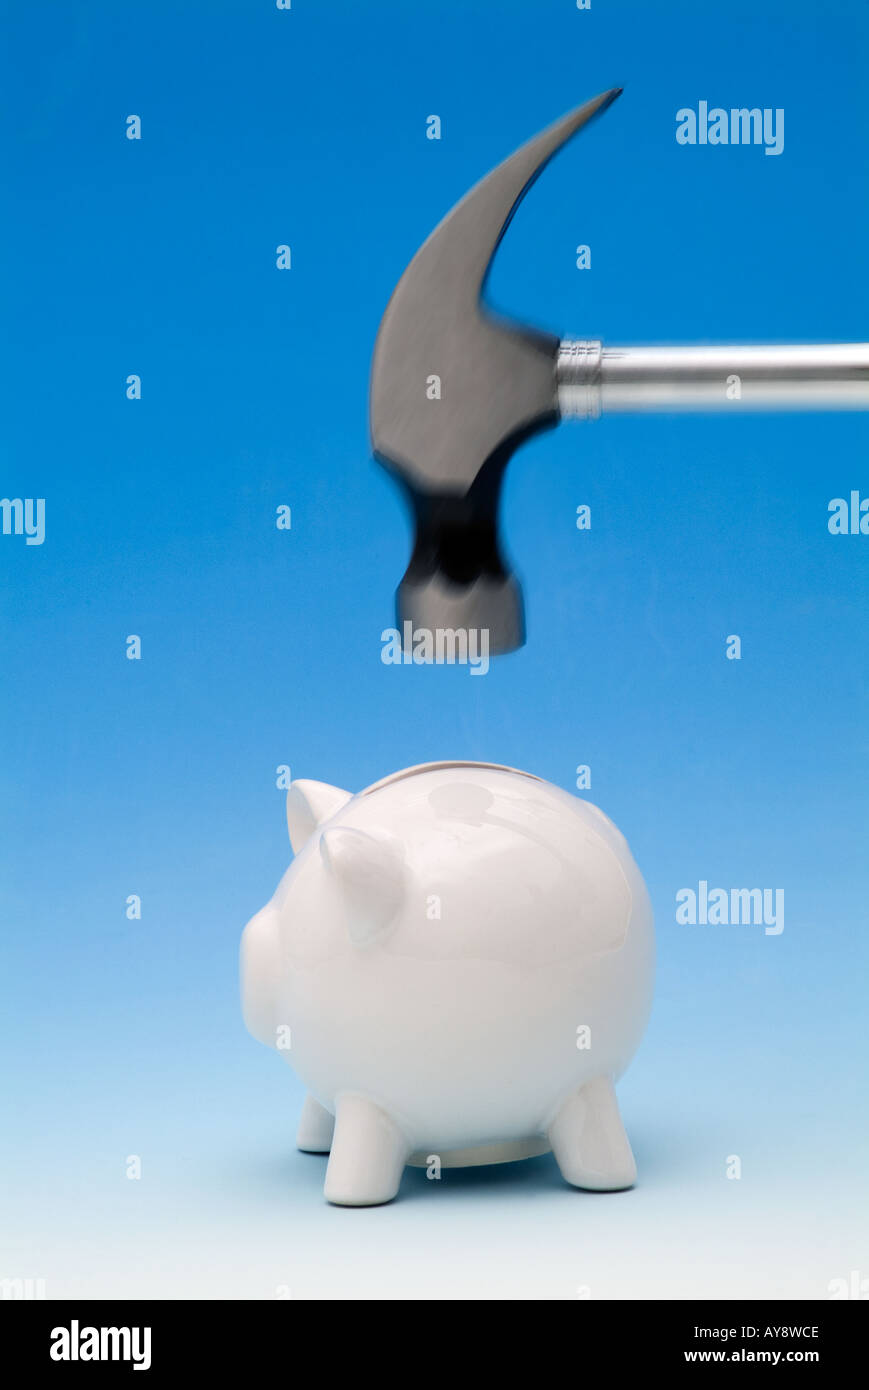 Hammer zu öffnen ein Sparschwein knacken Stockfotografie - Alamy